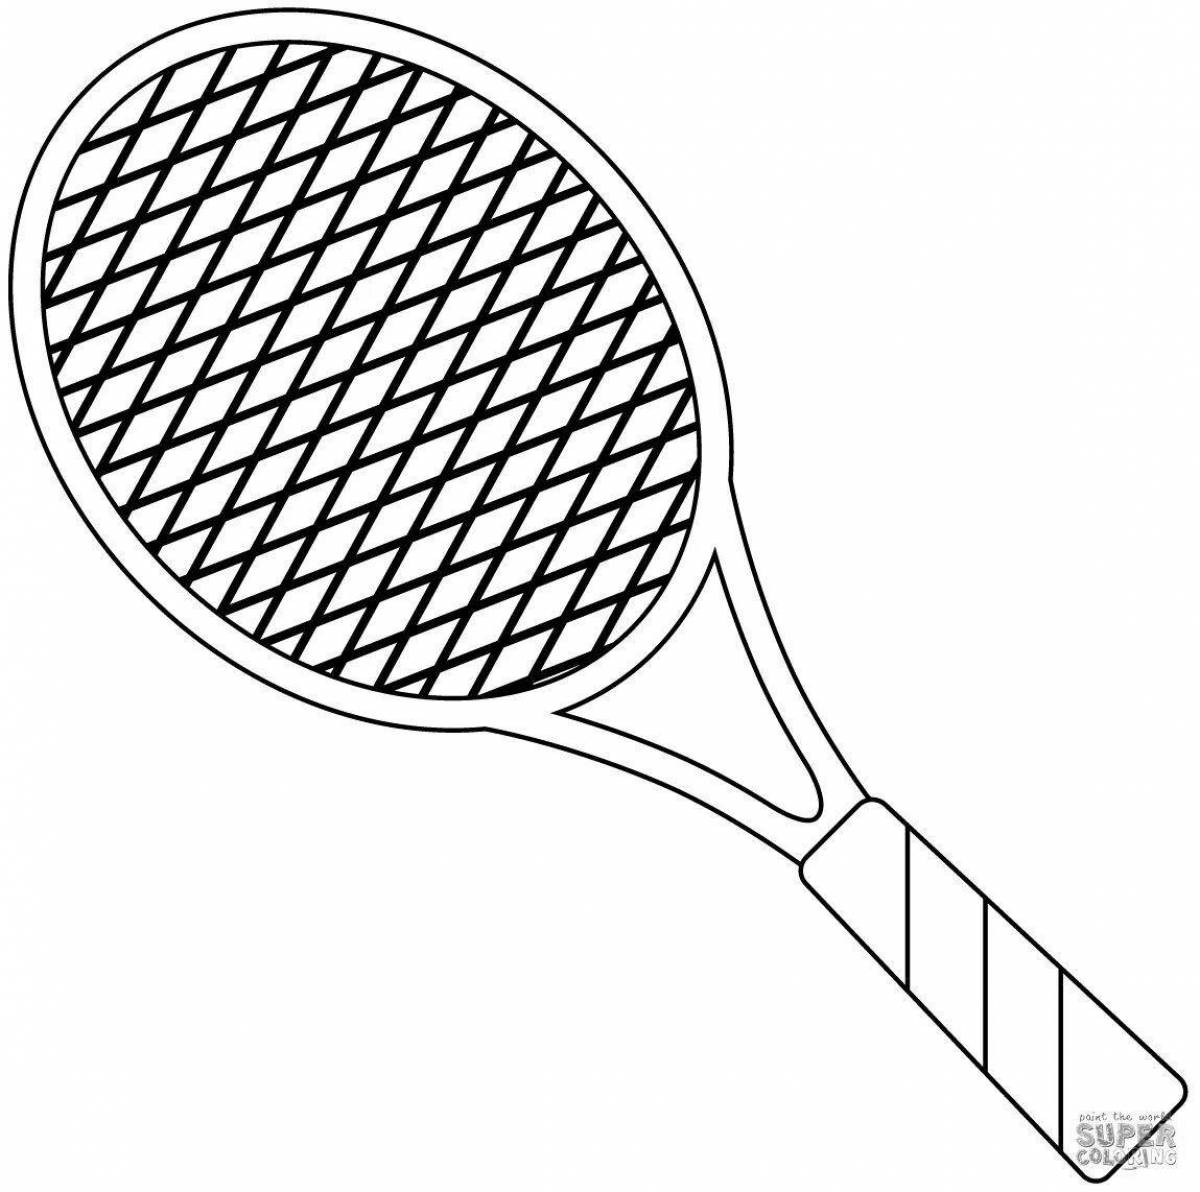 Интригующая раскраска теннисной ракетки